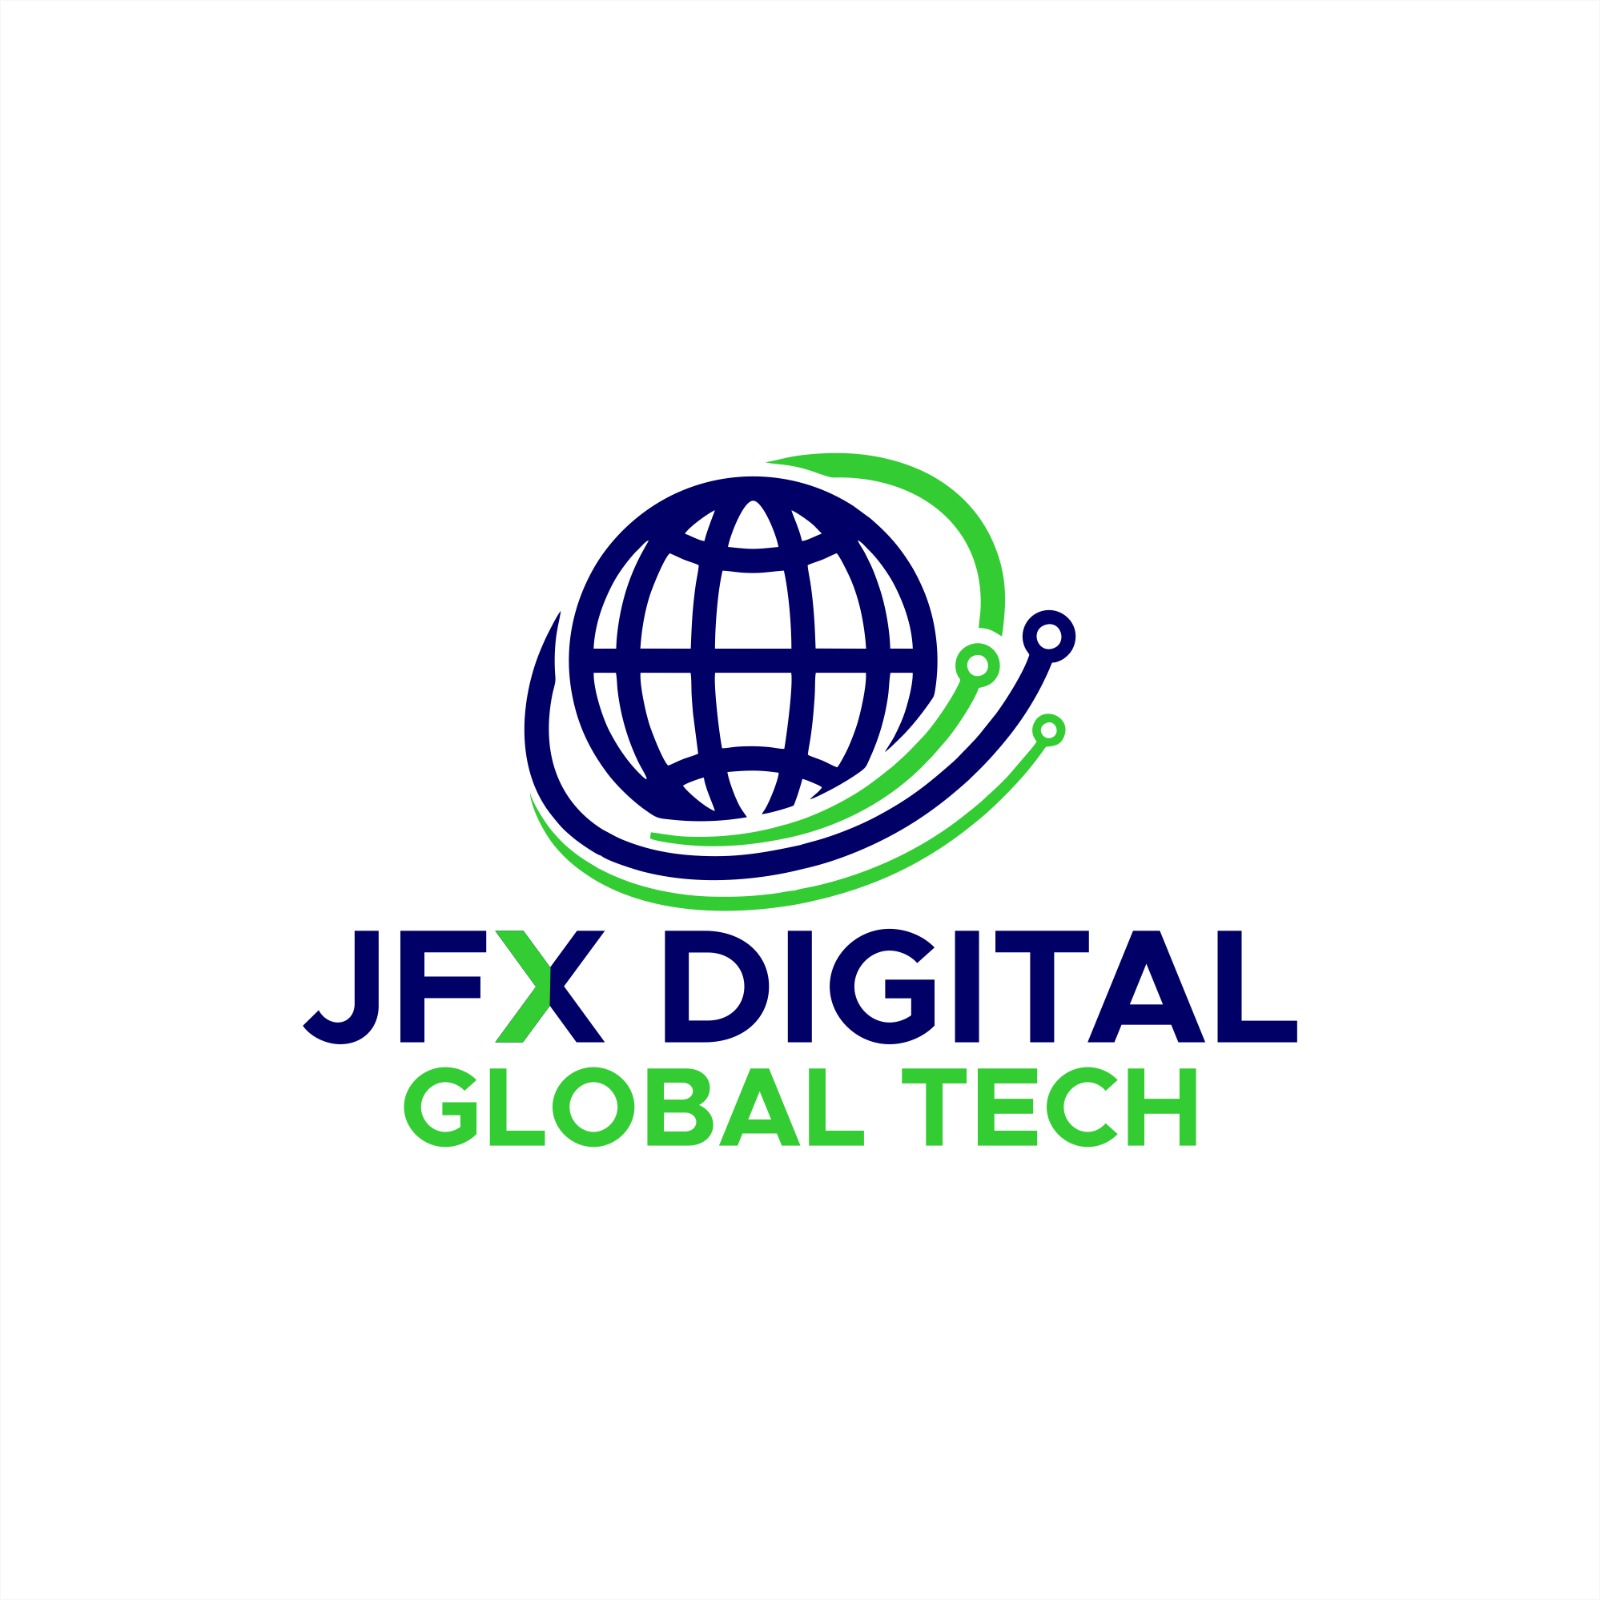 Jfx Digital Global Tech 